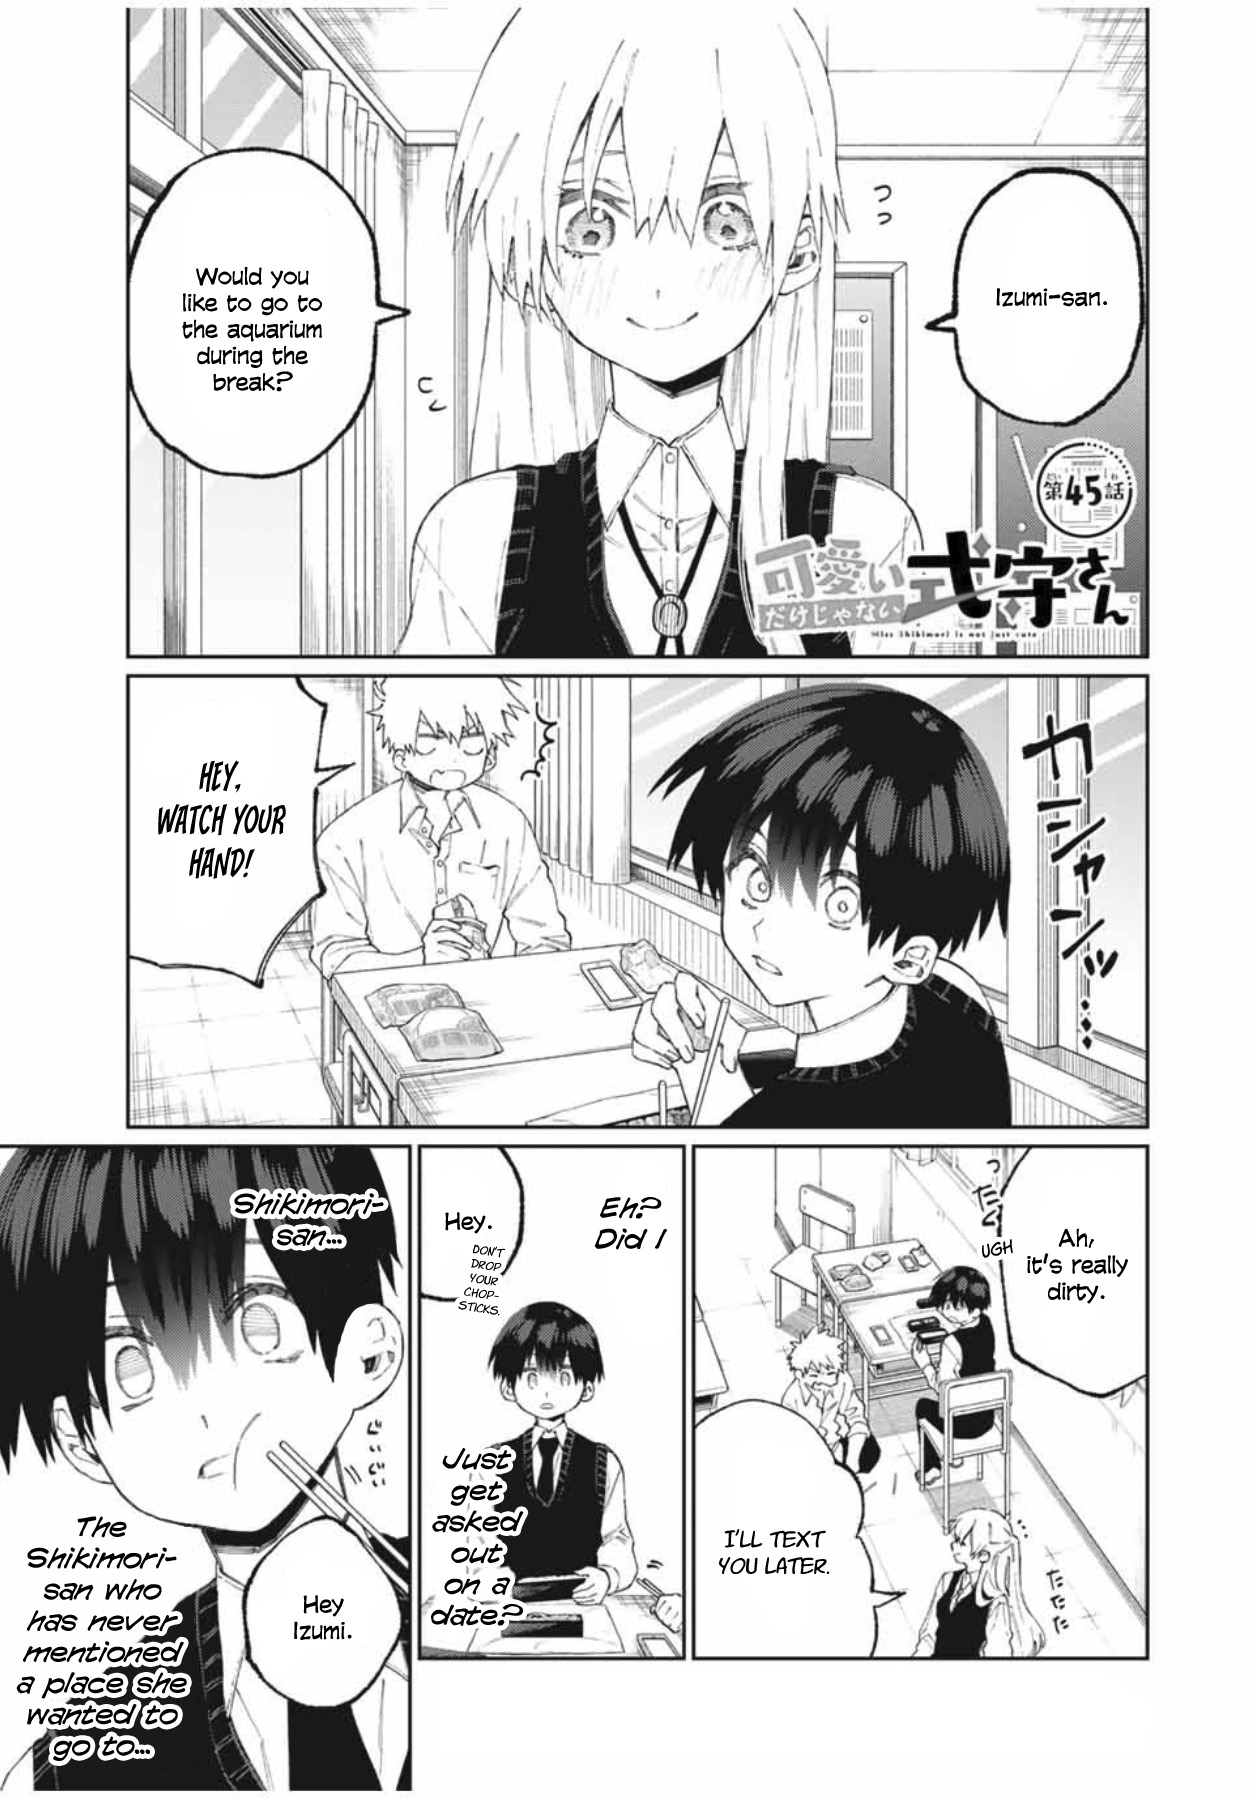 Shikimori's Not Just A Cutie - chapter 45 - #1